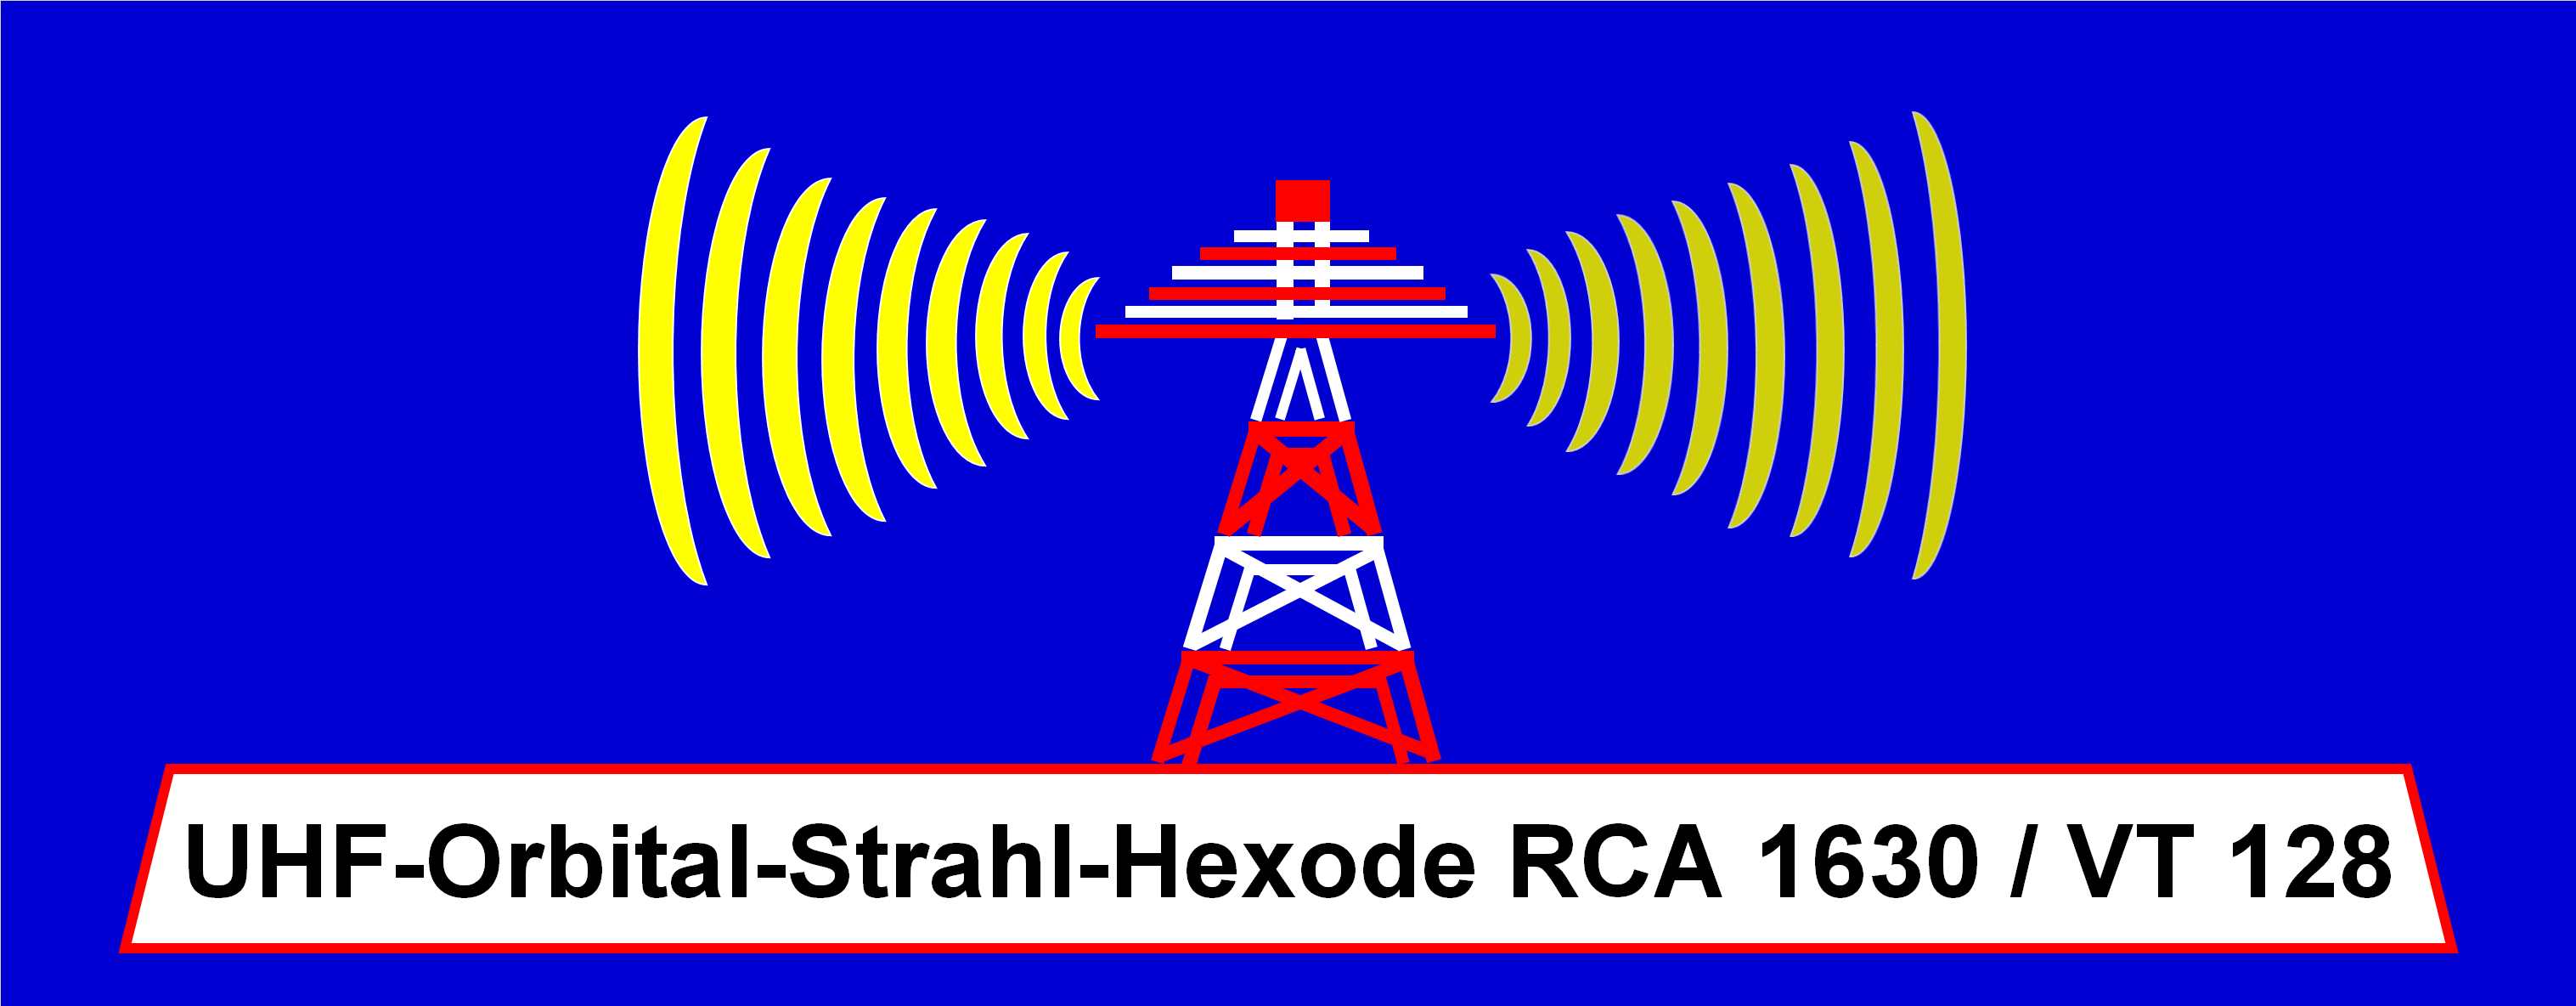 UHF-Orbital-Strahl-Hexode RCA 1630 / VT 128